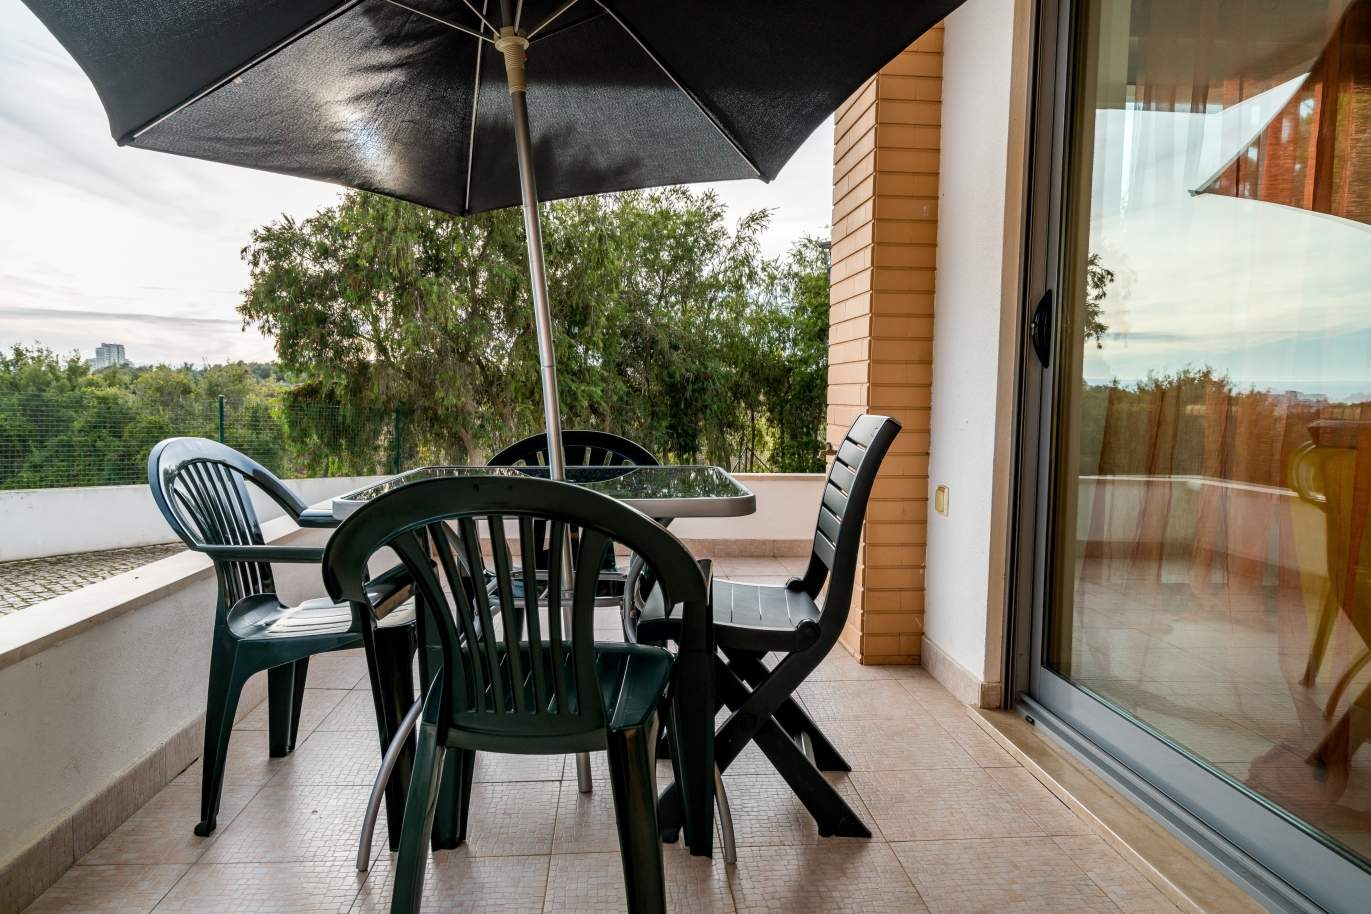 Sale of villa in private condominium in Albufeira, Algarve, Portugal_126877